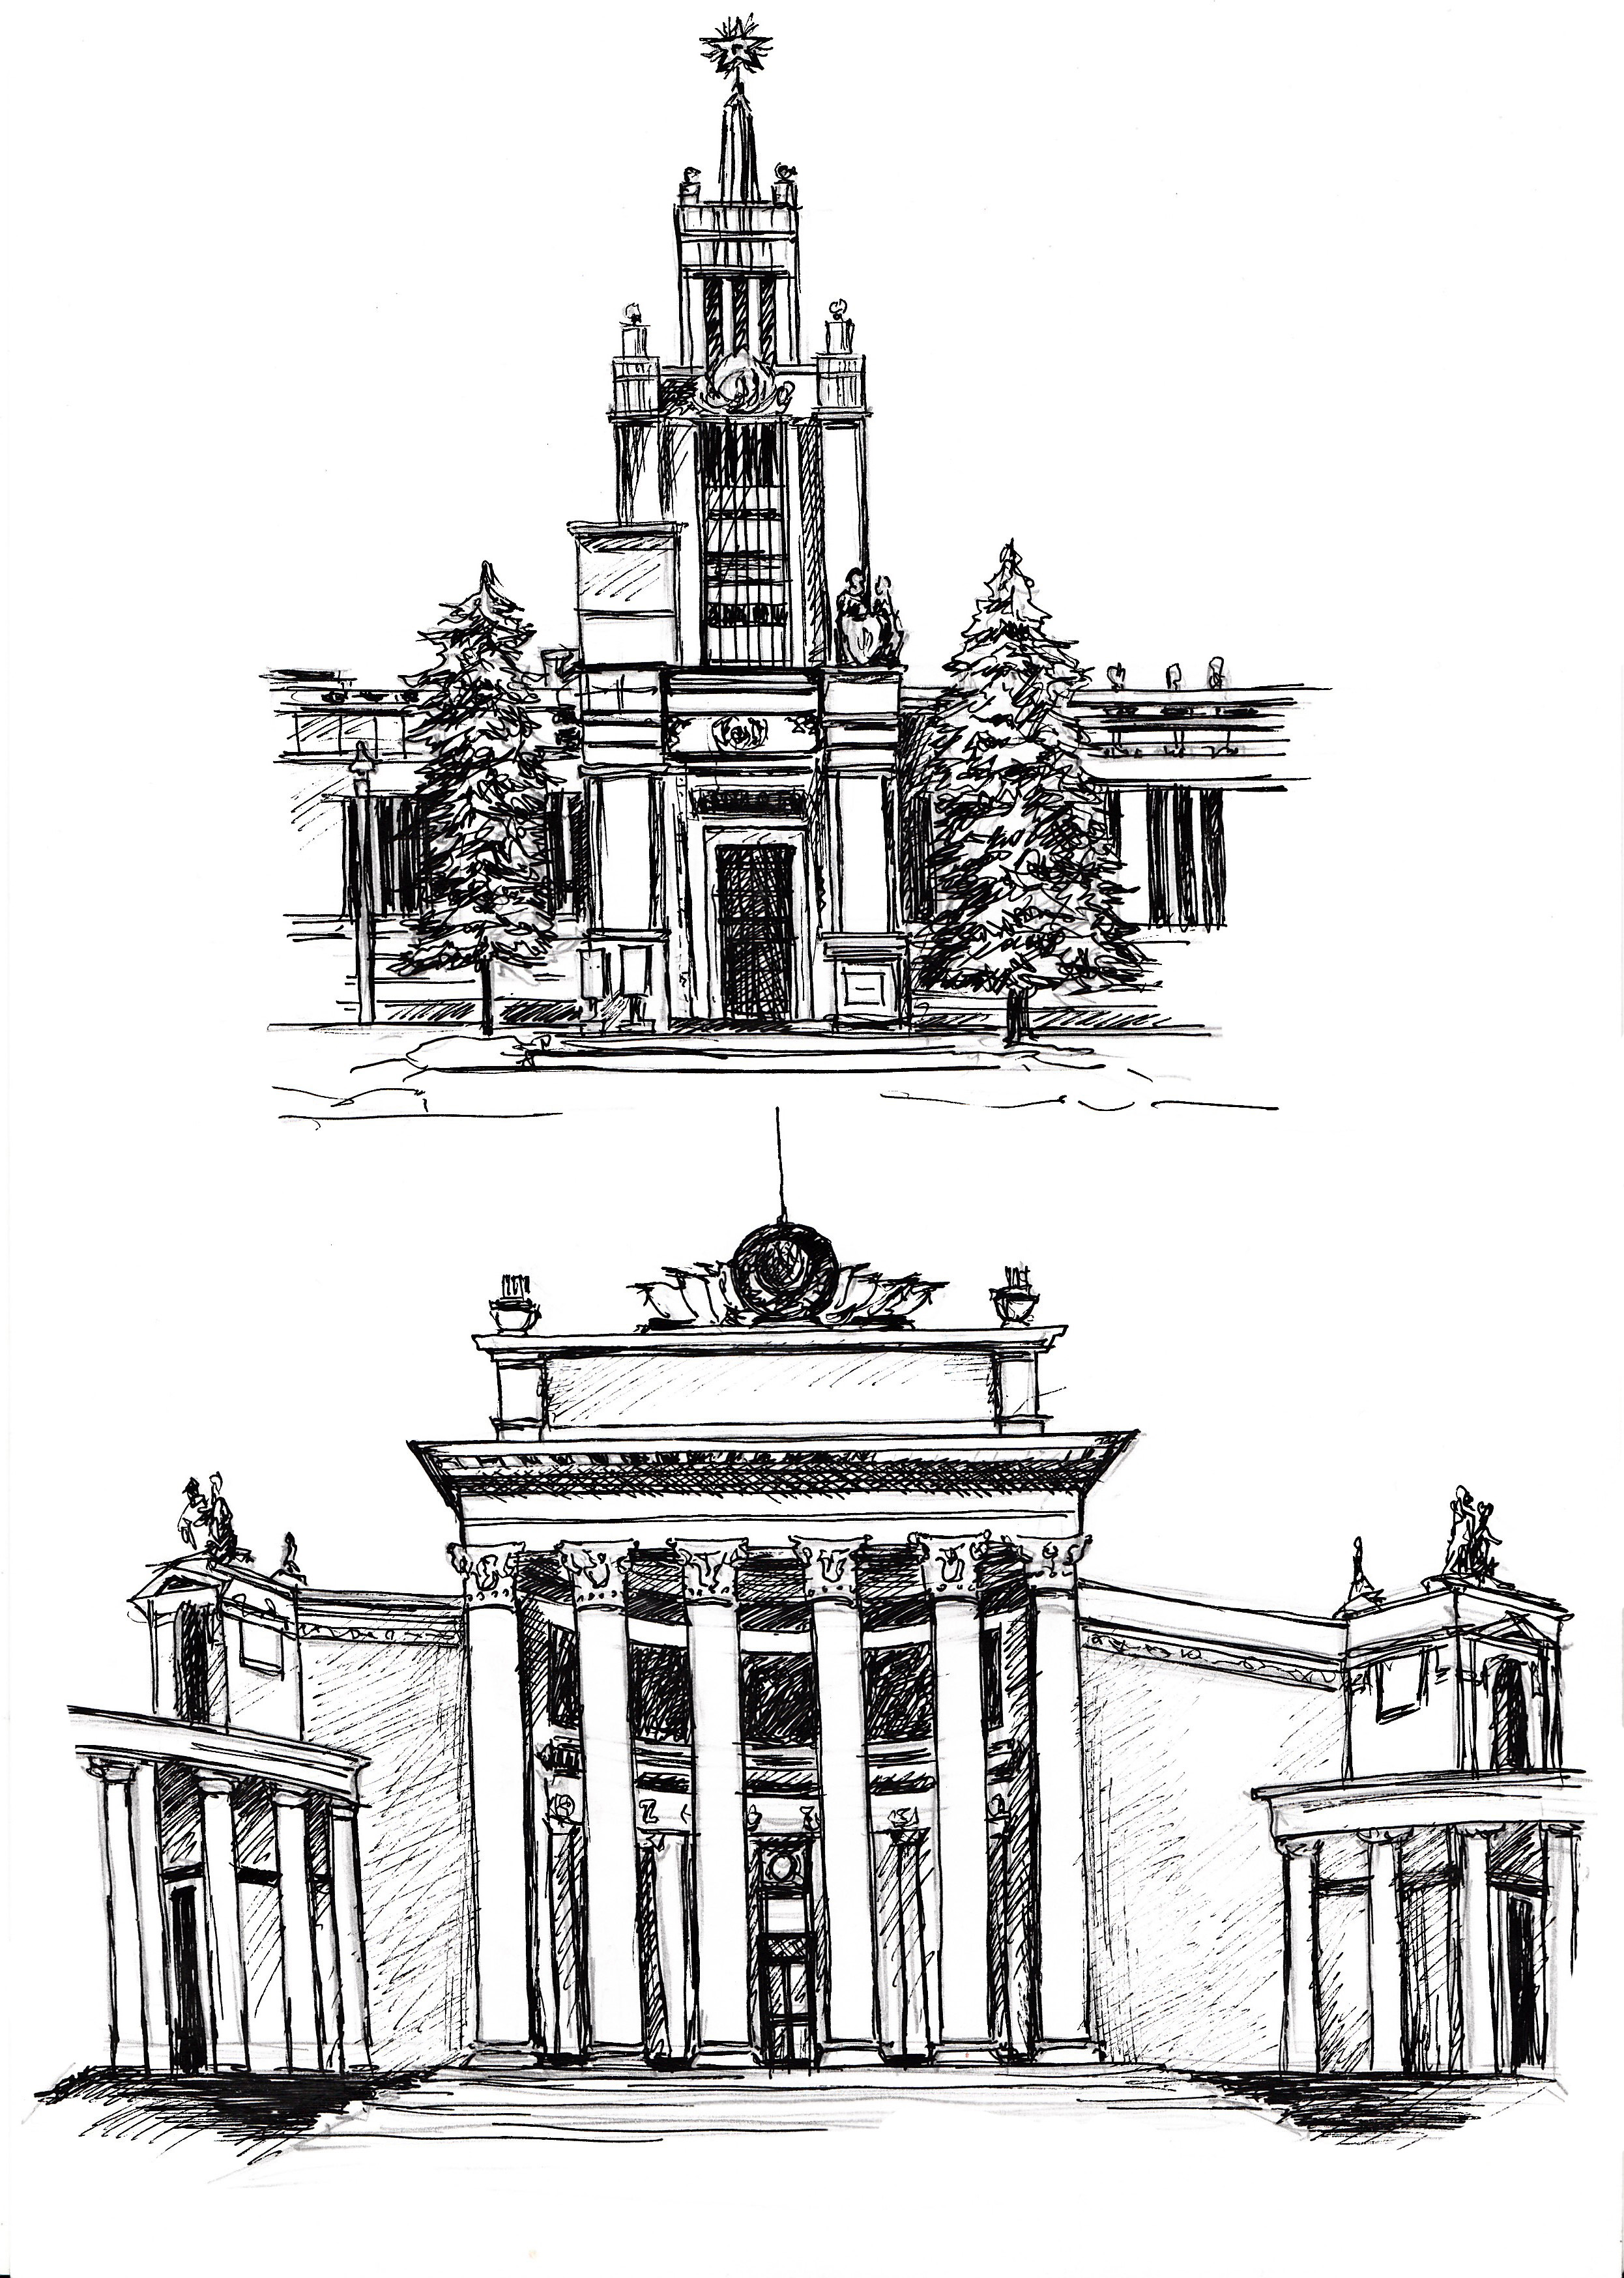 Иллюстрация Архитектура ВДНХ в стиле графика | Illustrators.ru